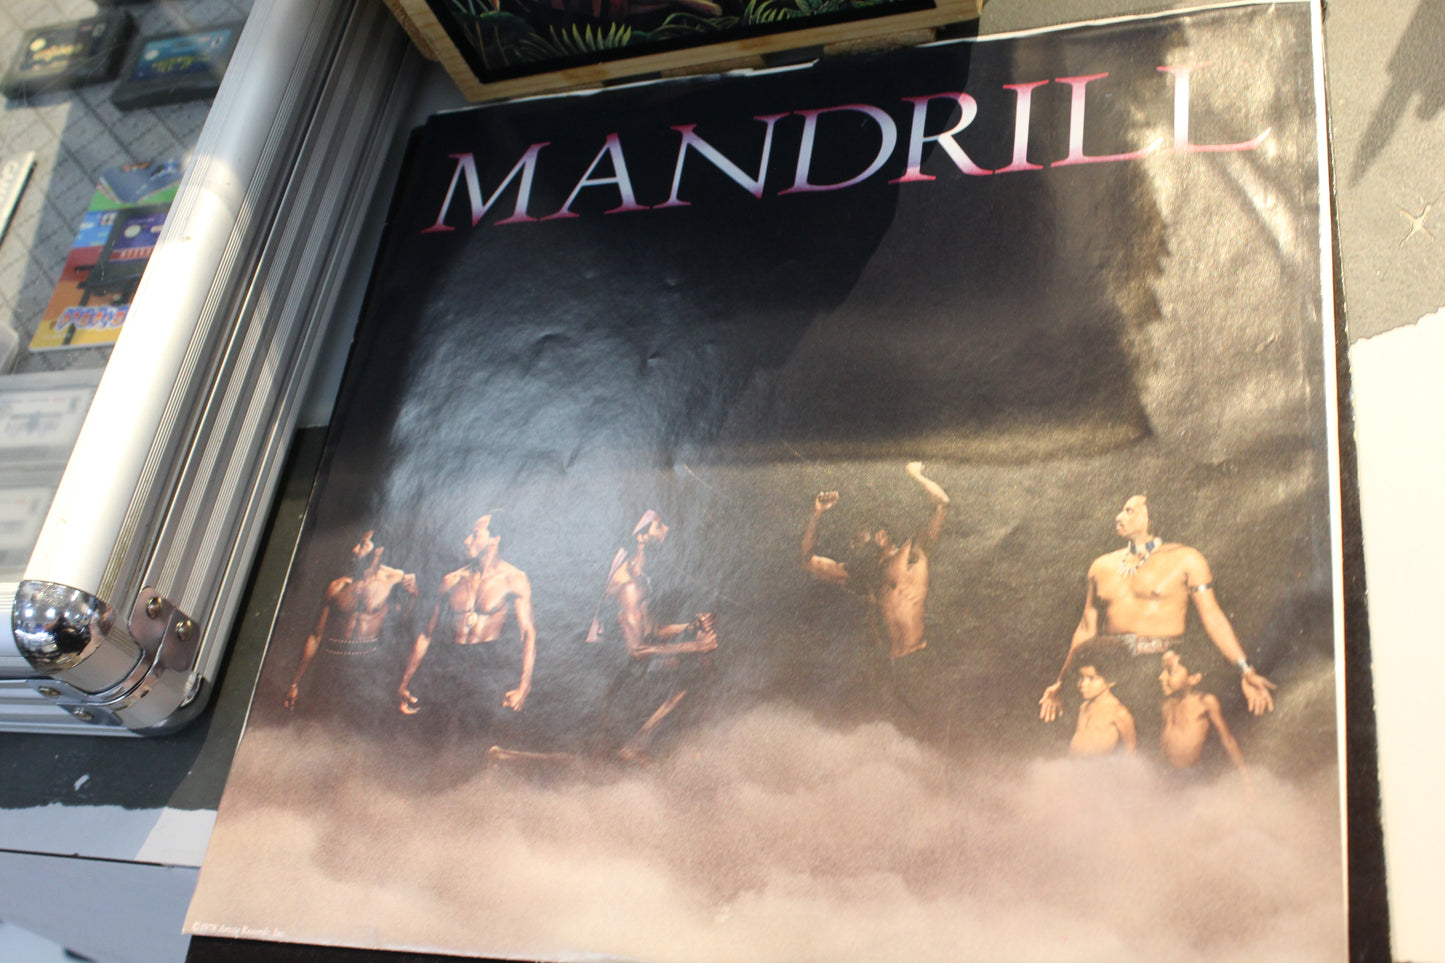 MANDRILL - NEW WORLDS ALBUM